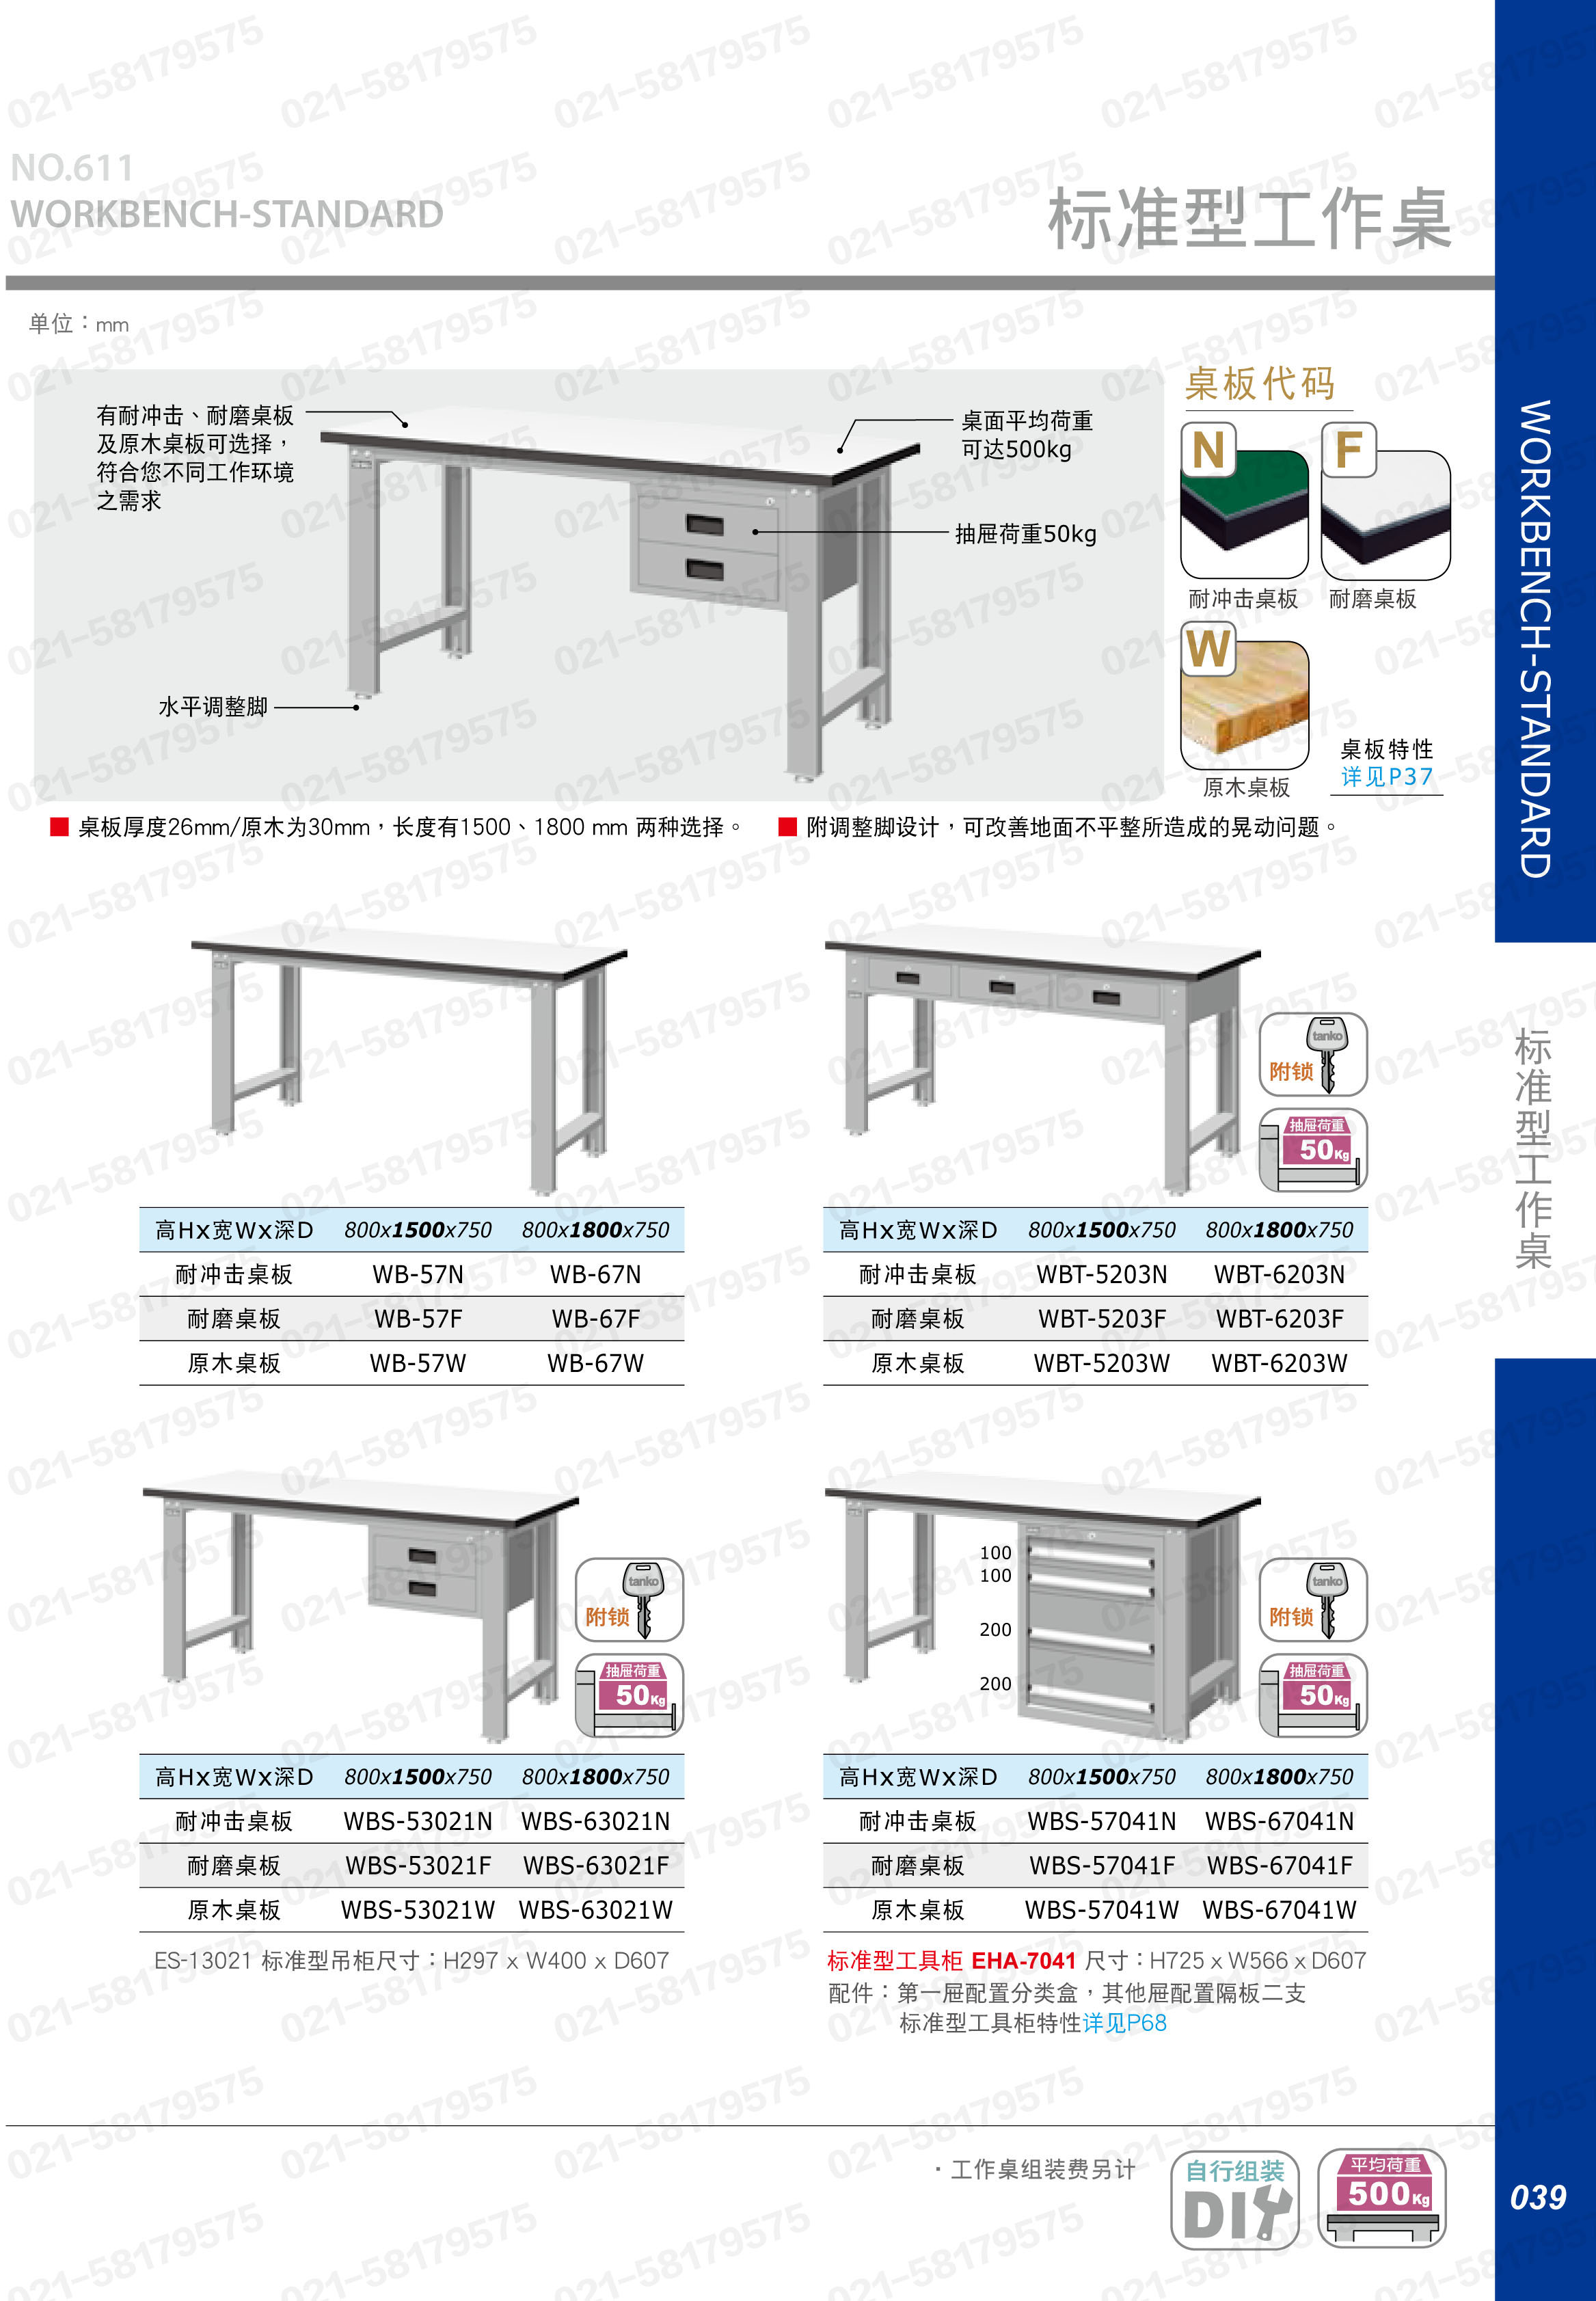 轻型工作桌1500×750×800mm 耐磨桌板 带四抽边柜,WBS-57041F,5D2948